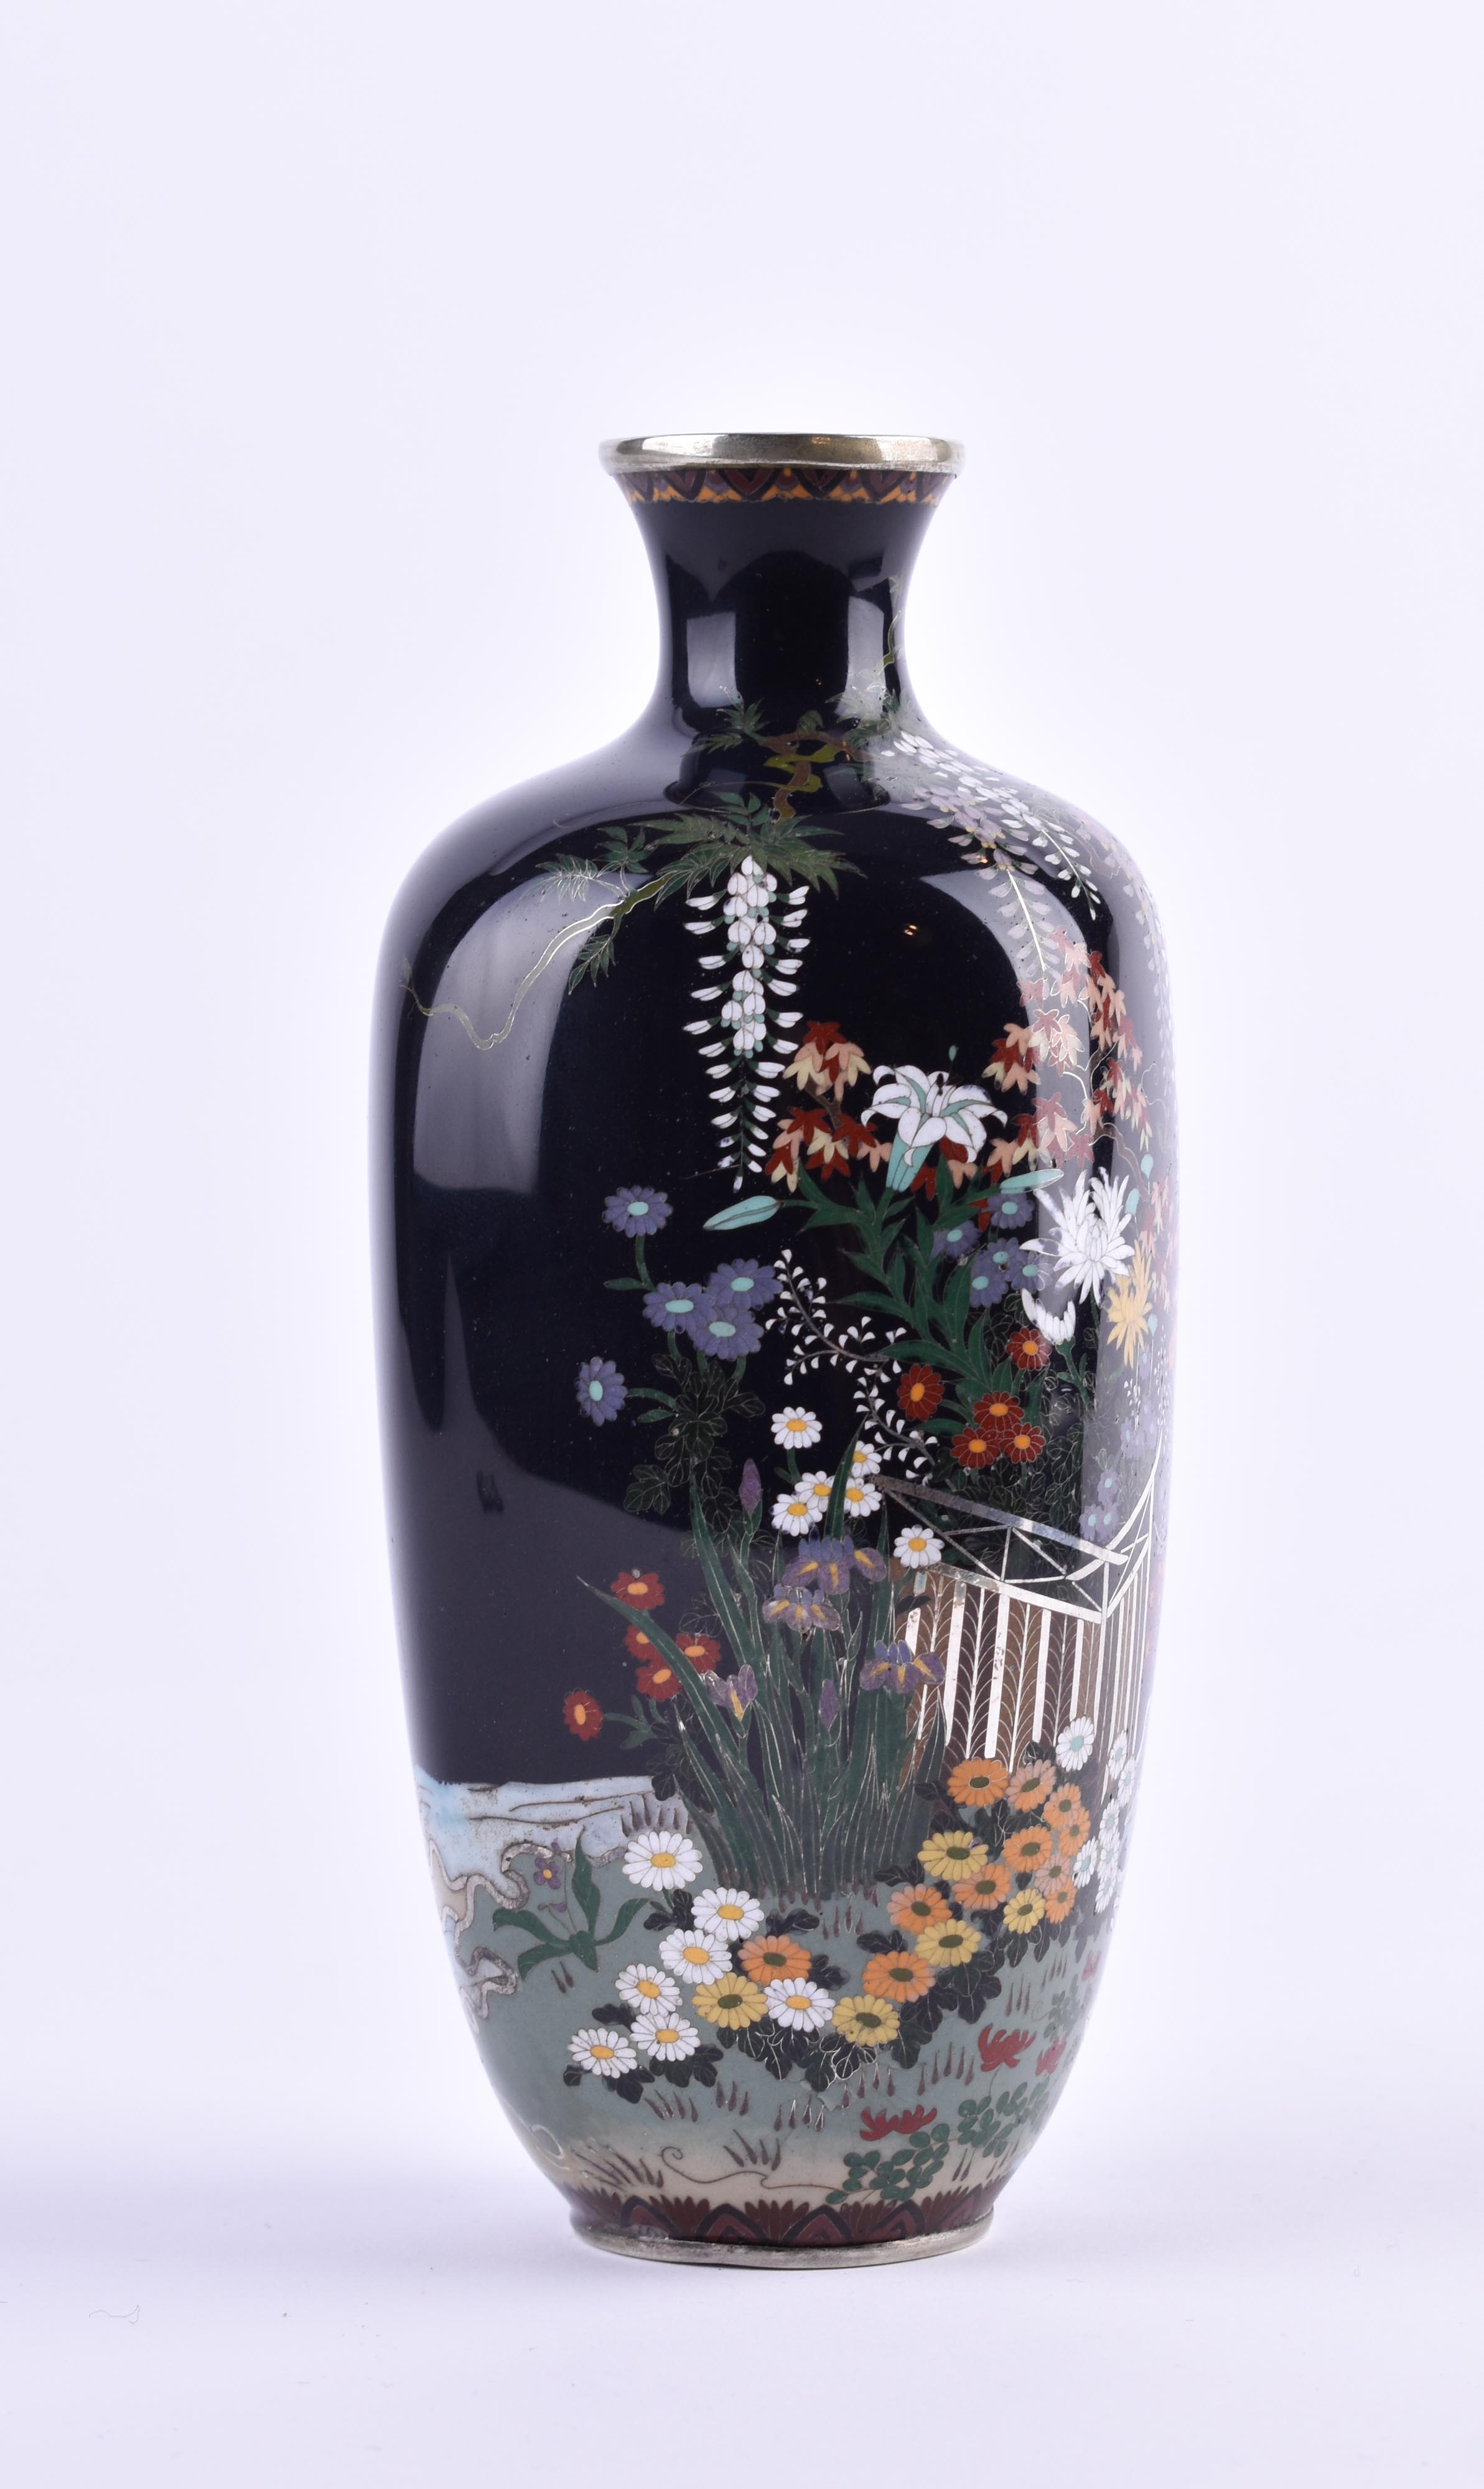  Cloisonne vase Japan Meiji period - Image 4 of 12